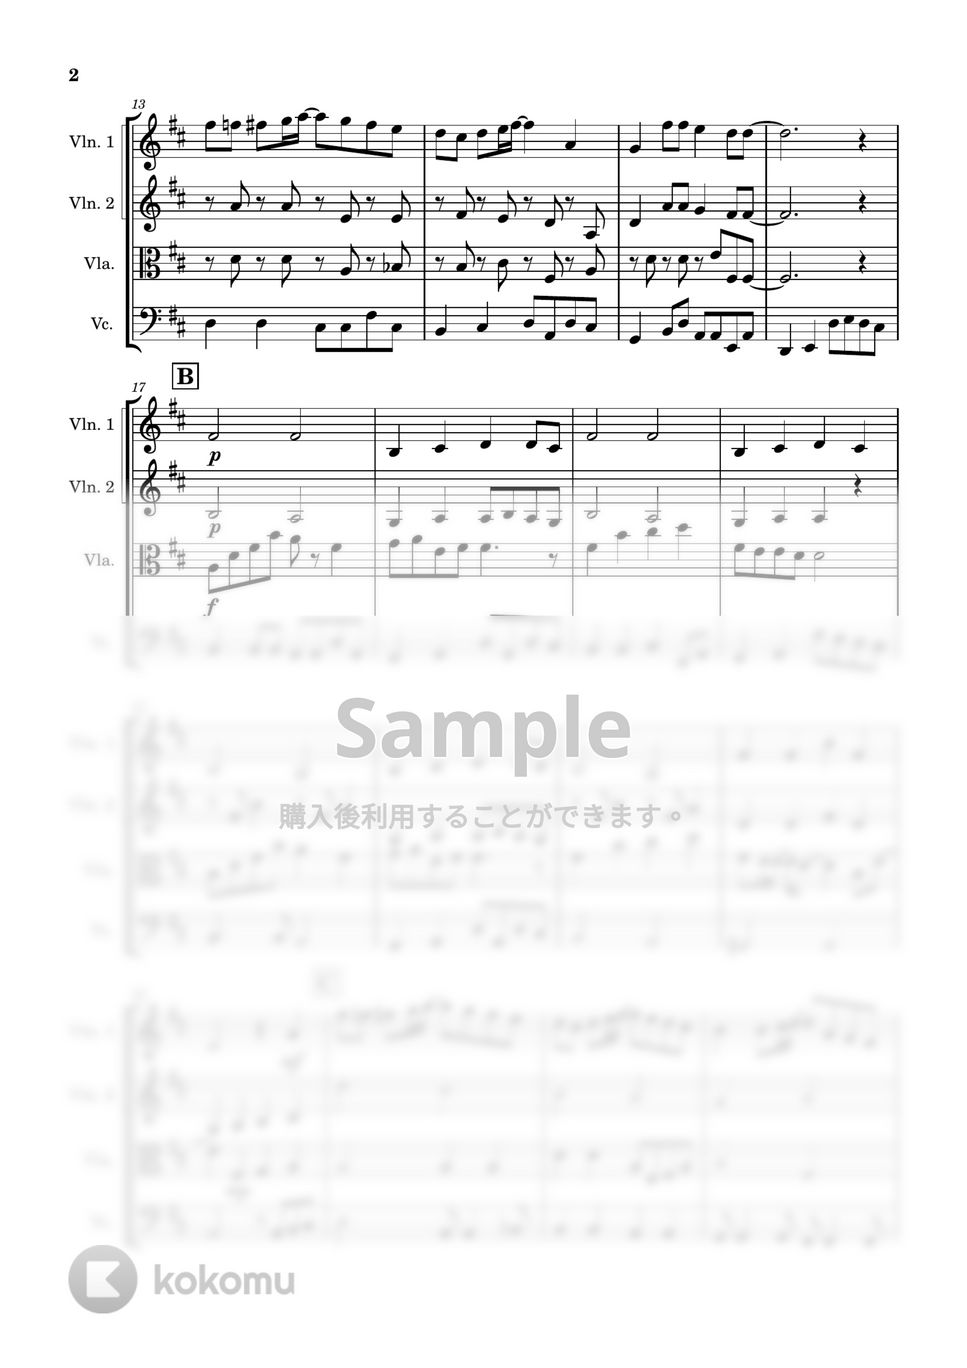 綾香 - にじいろ (弦楽四重奏) by Cellotto